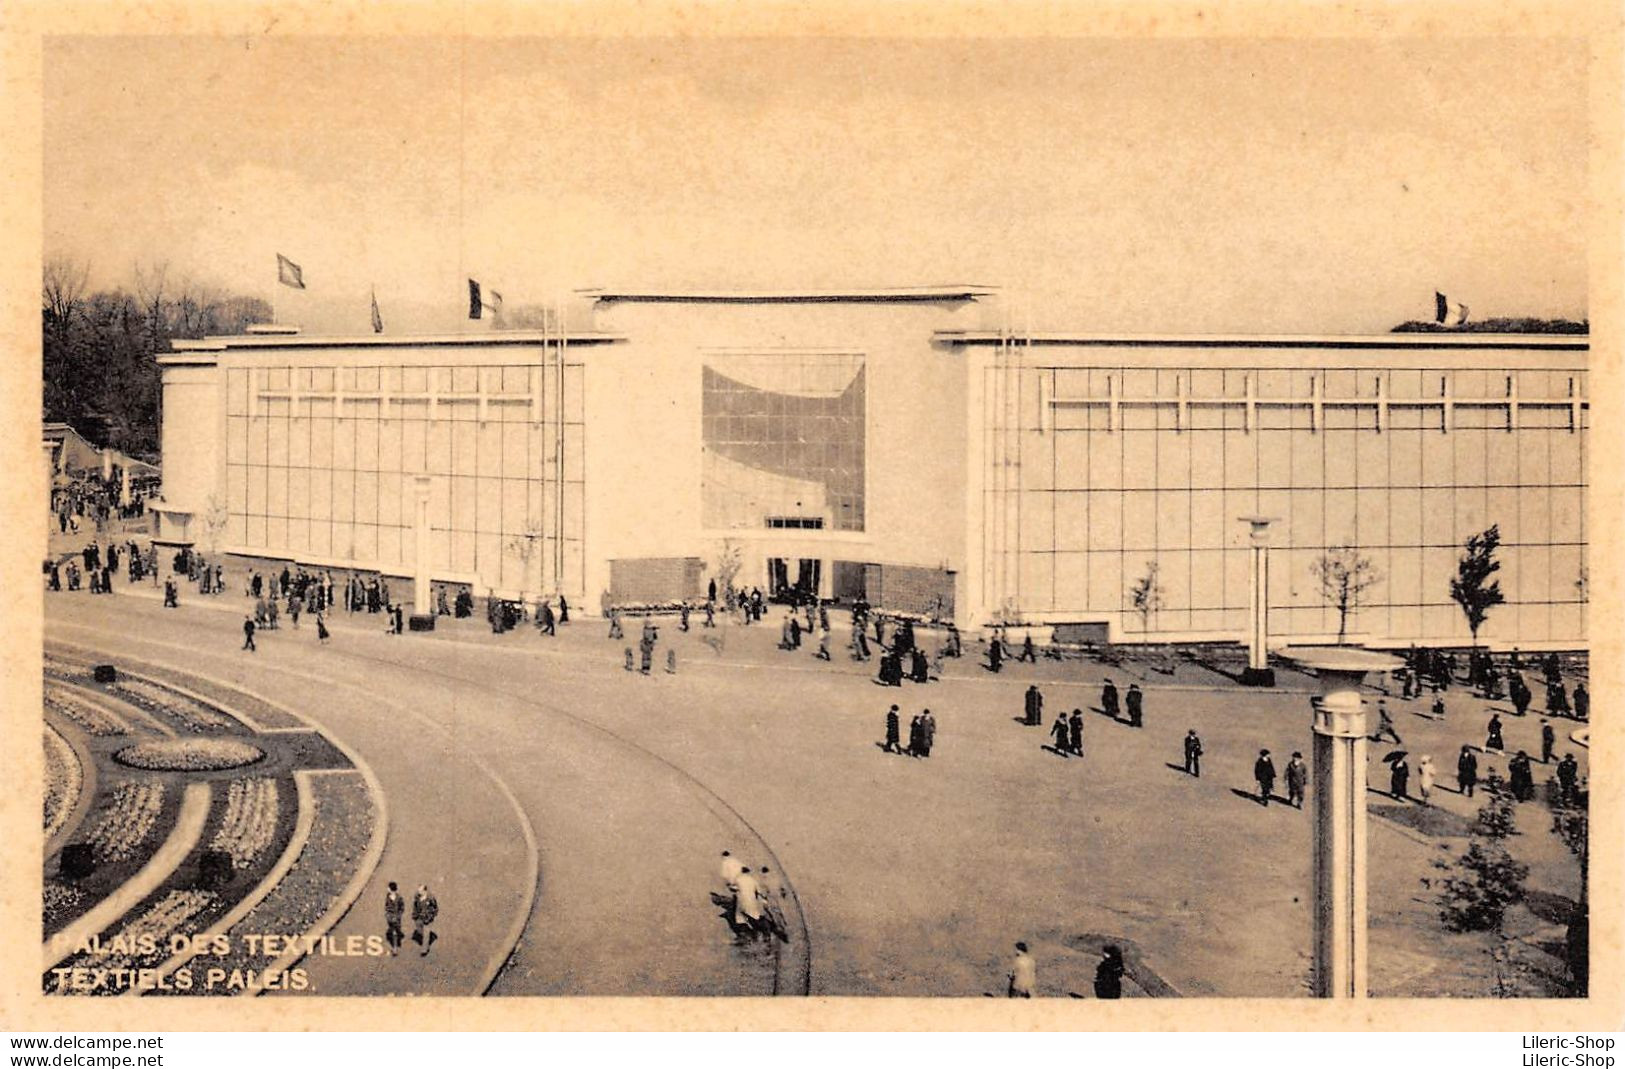 Exposition Universelle 1935 - PALAIS DES TEXTILES / TEXTIELS PALEIS - Mostre Universali